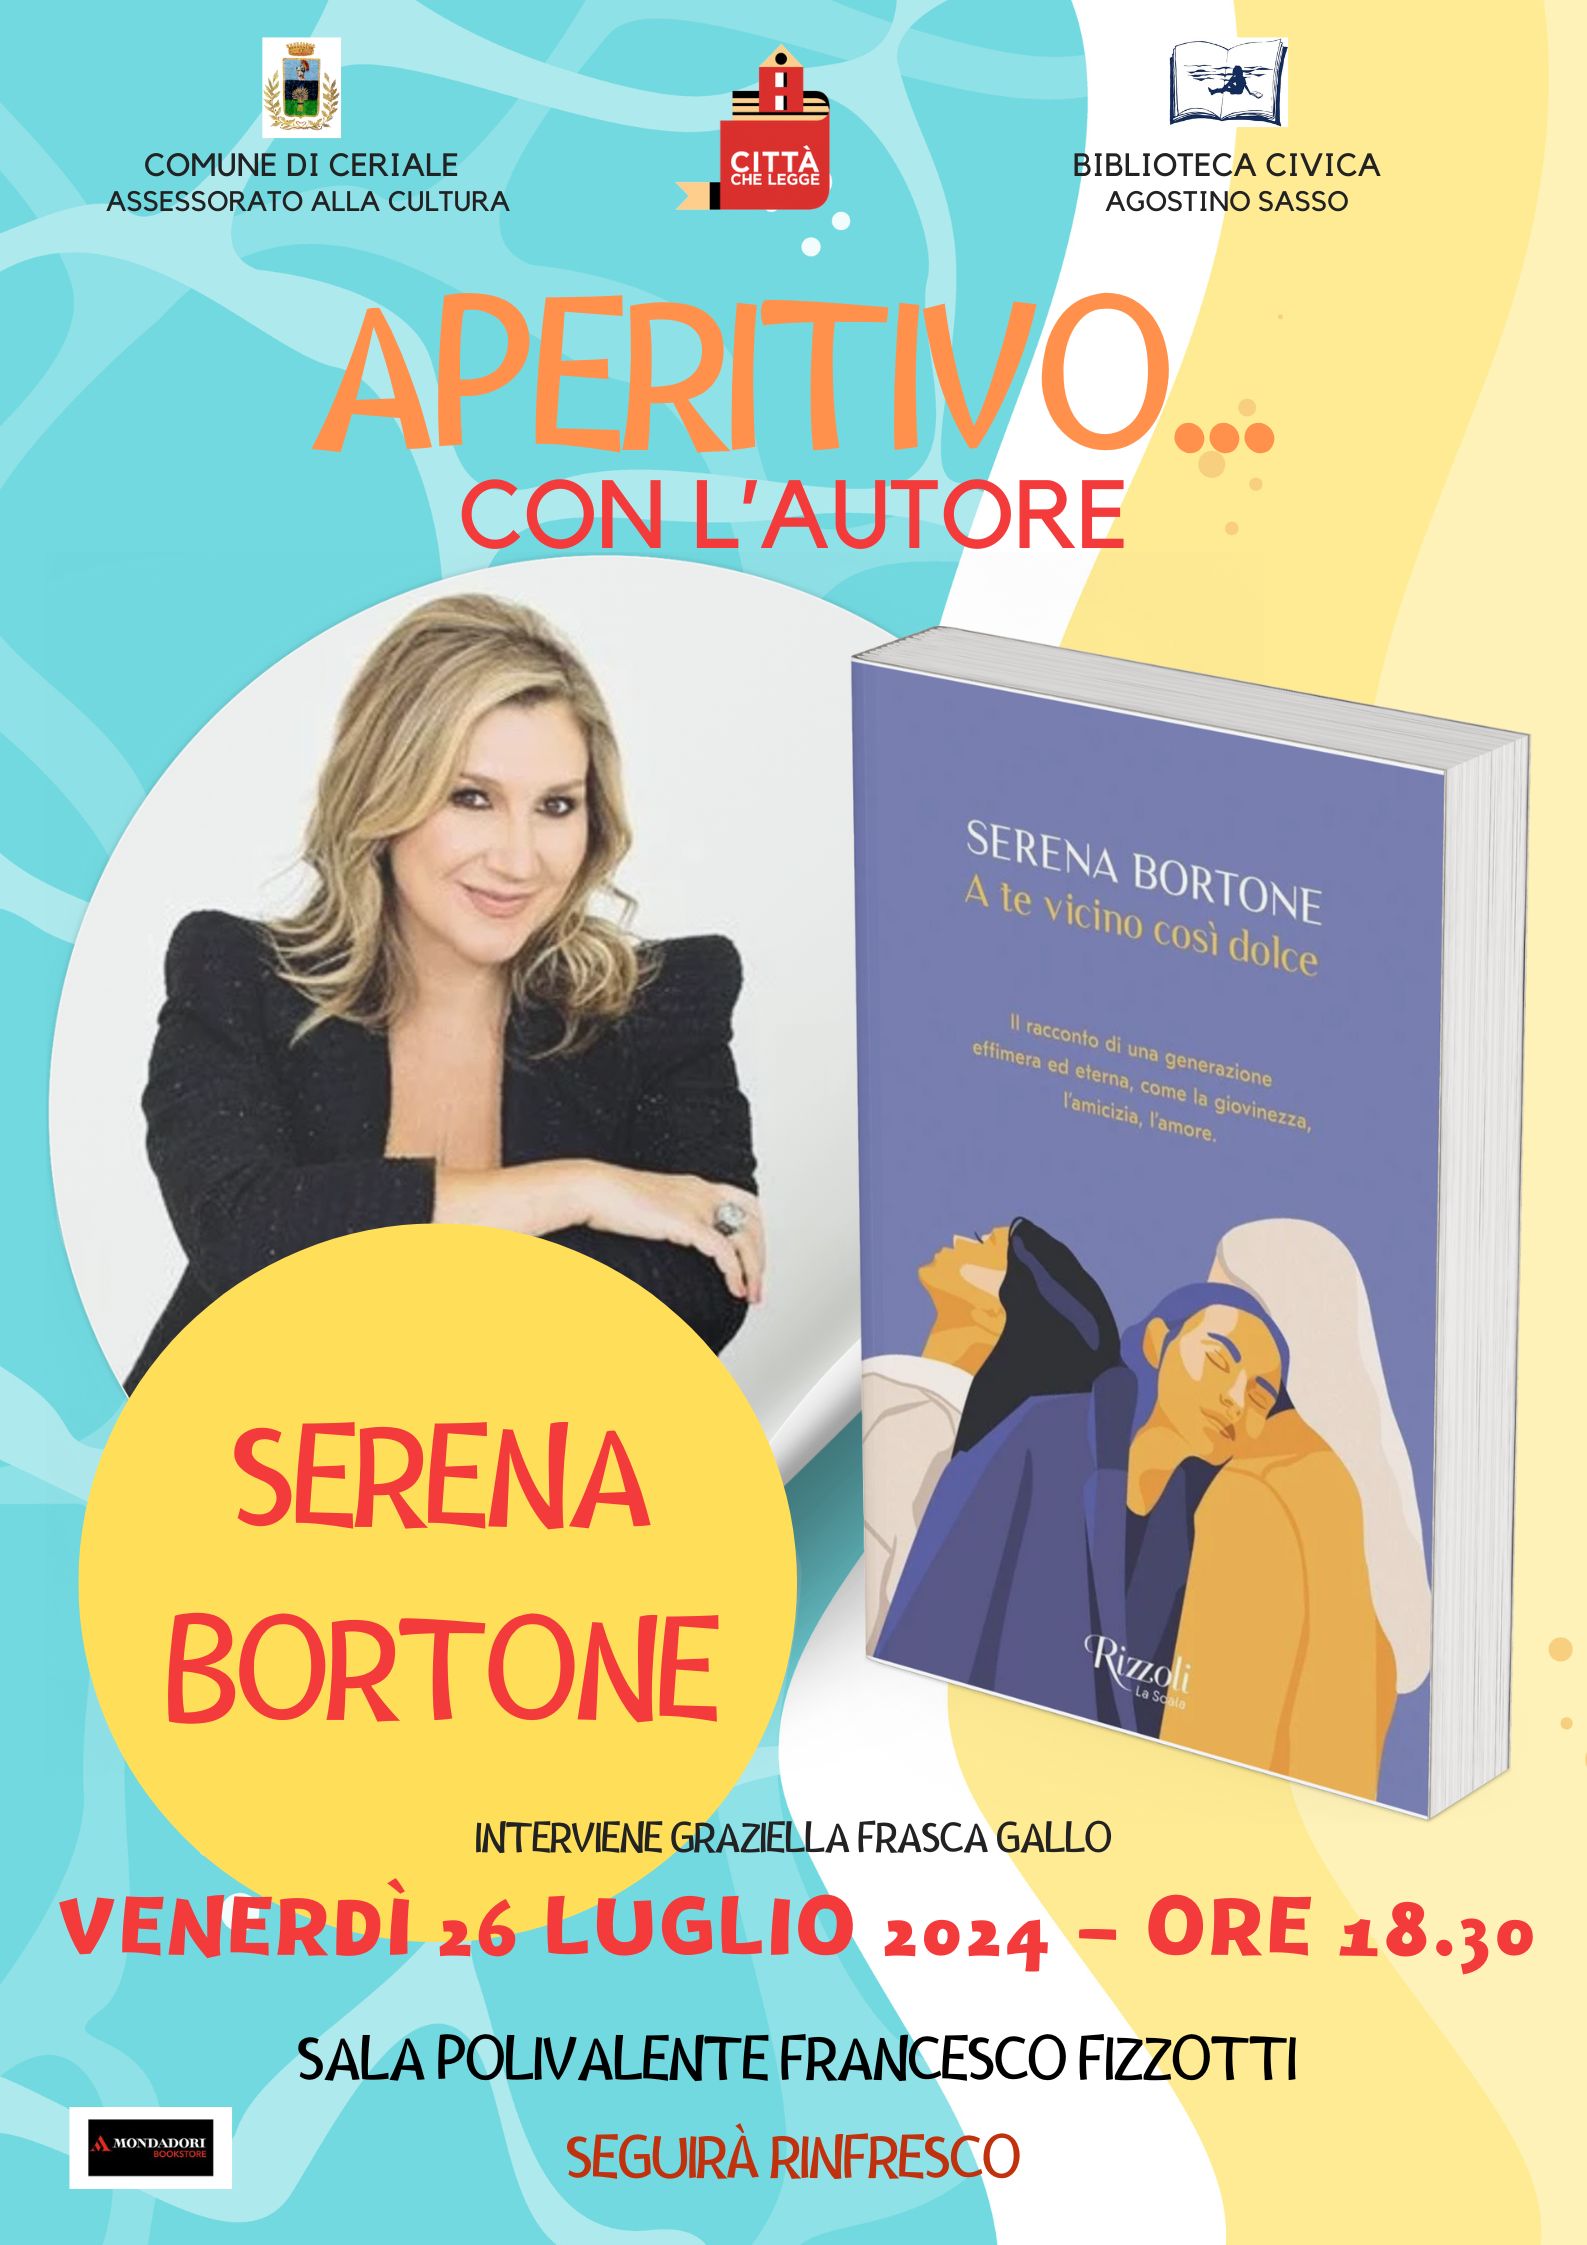 Aperitivo D'autore - Serena Bortone presenta il libro 